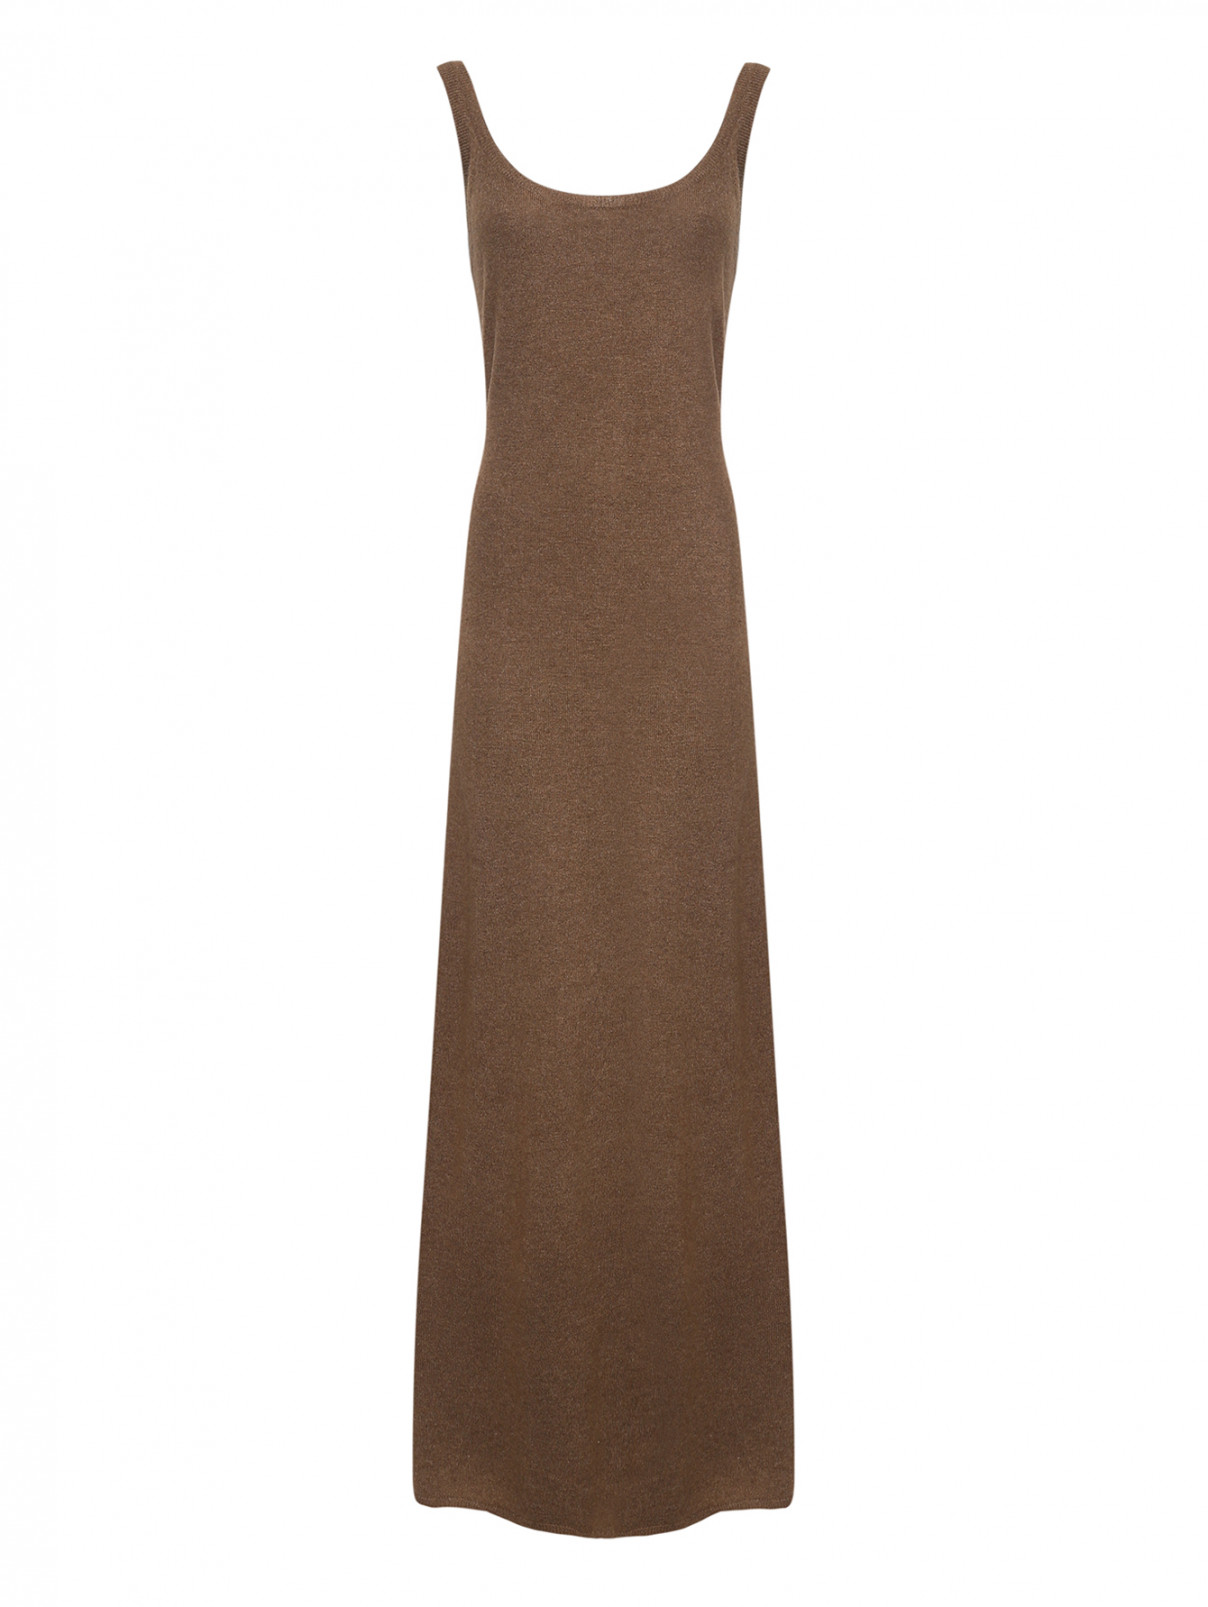 Трикотажное платье из шерсти и кашемира Max Mara  –  Общий вид  – Цвет:  Коричневый